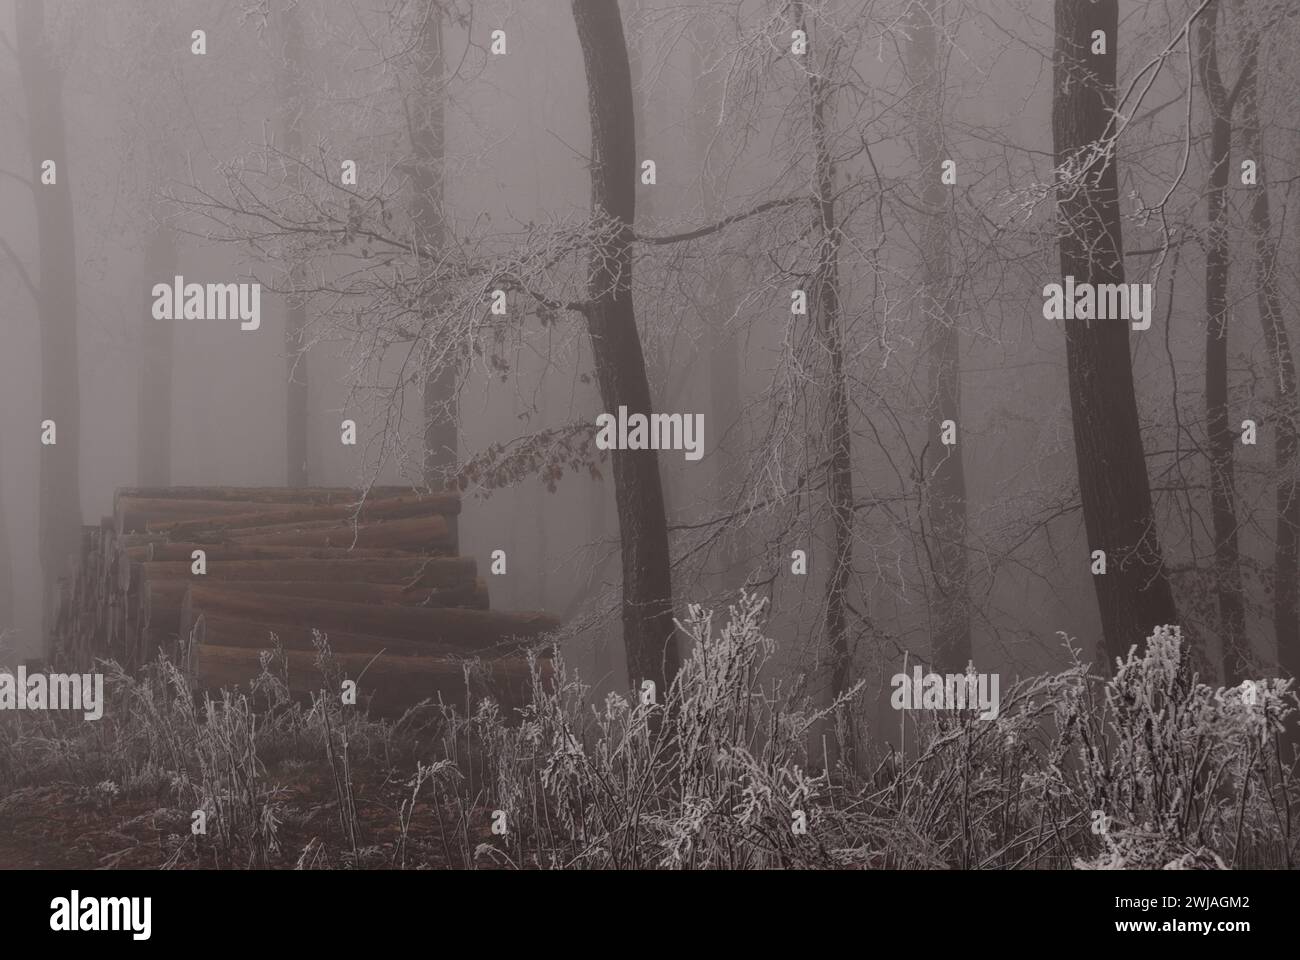 Rauhreif und Nebel im Wald Stock Photo